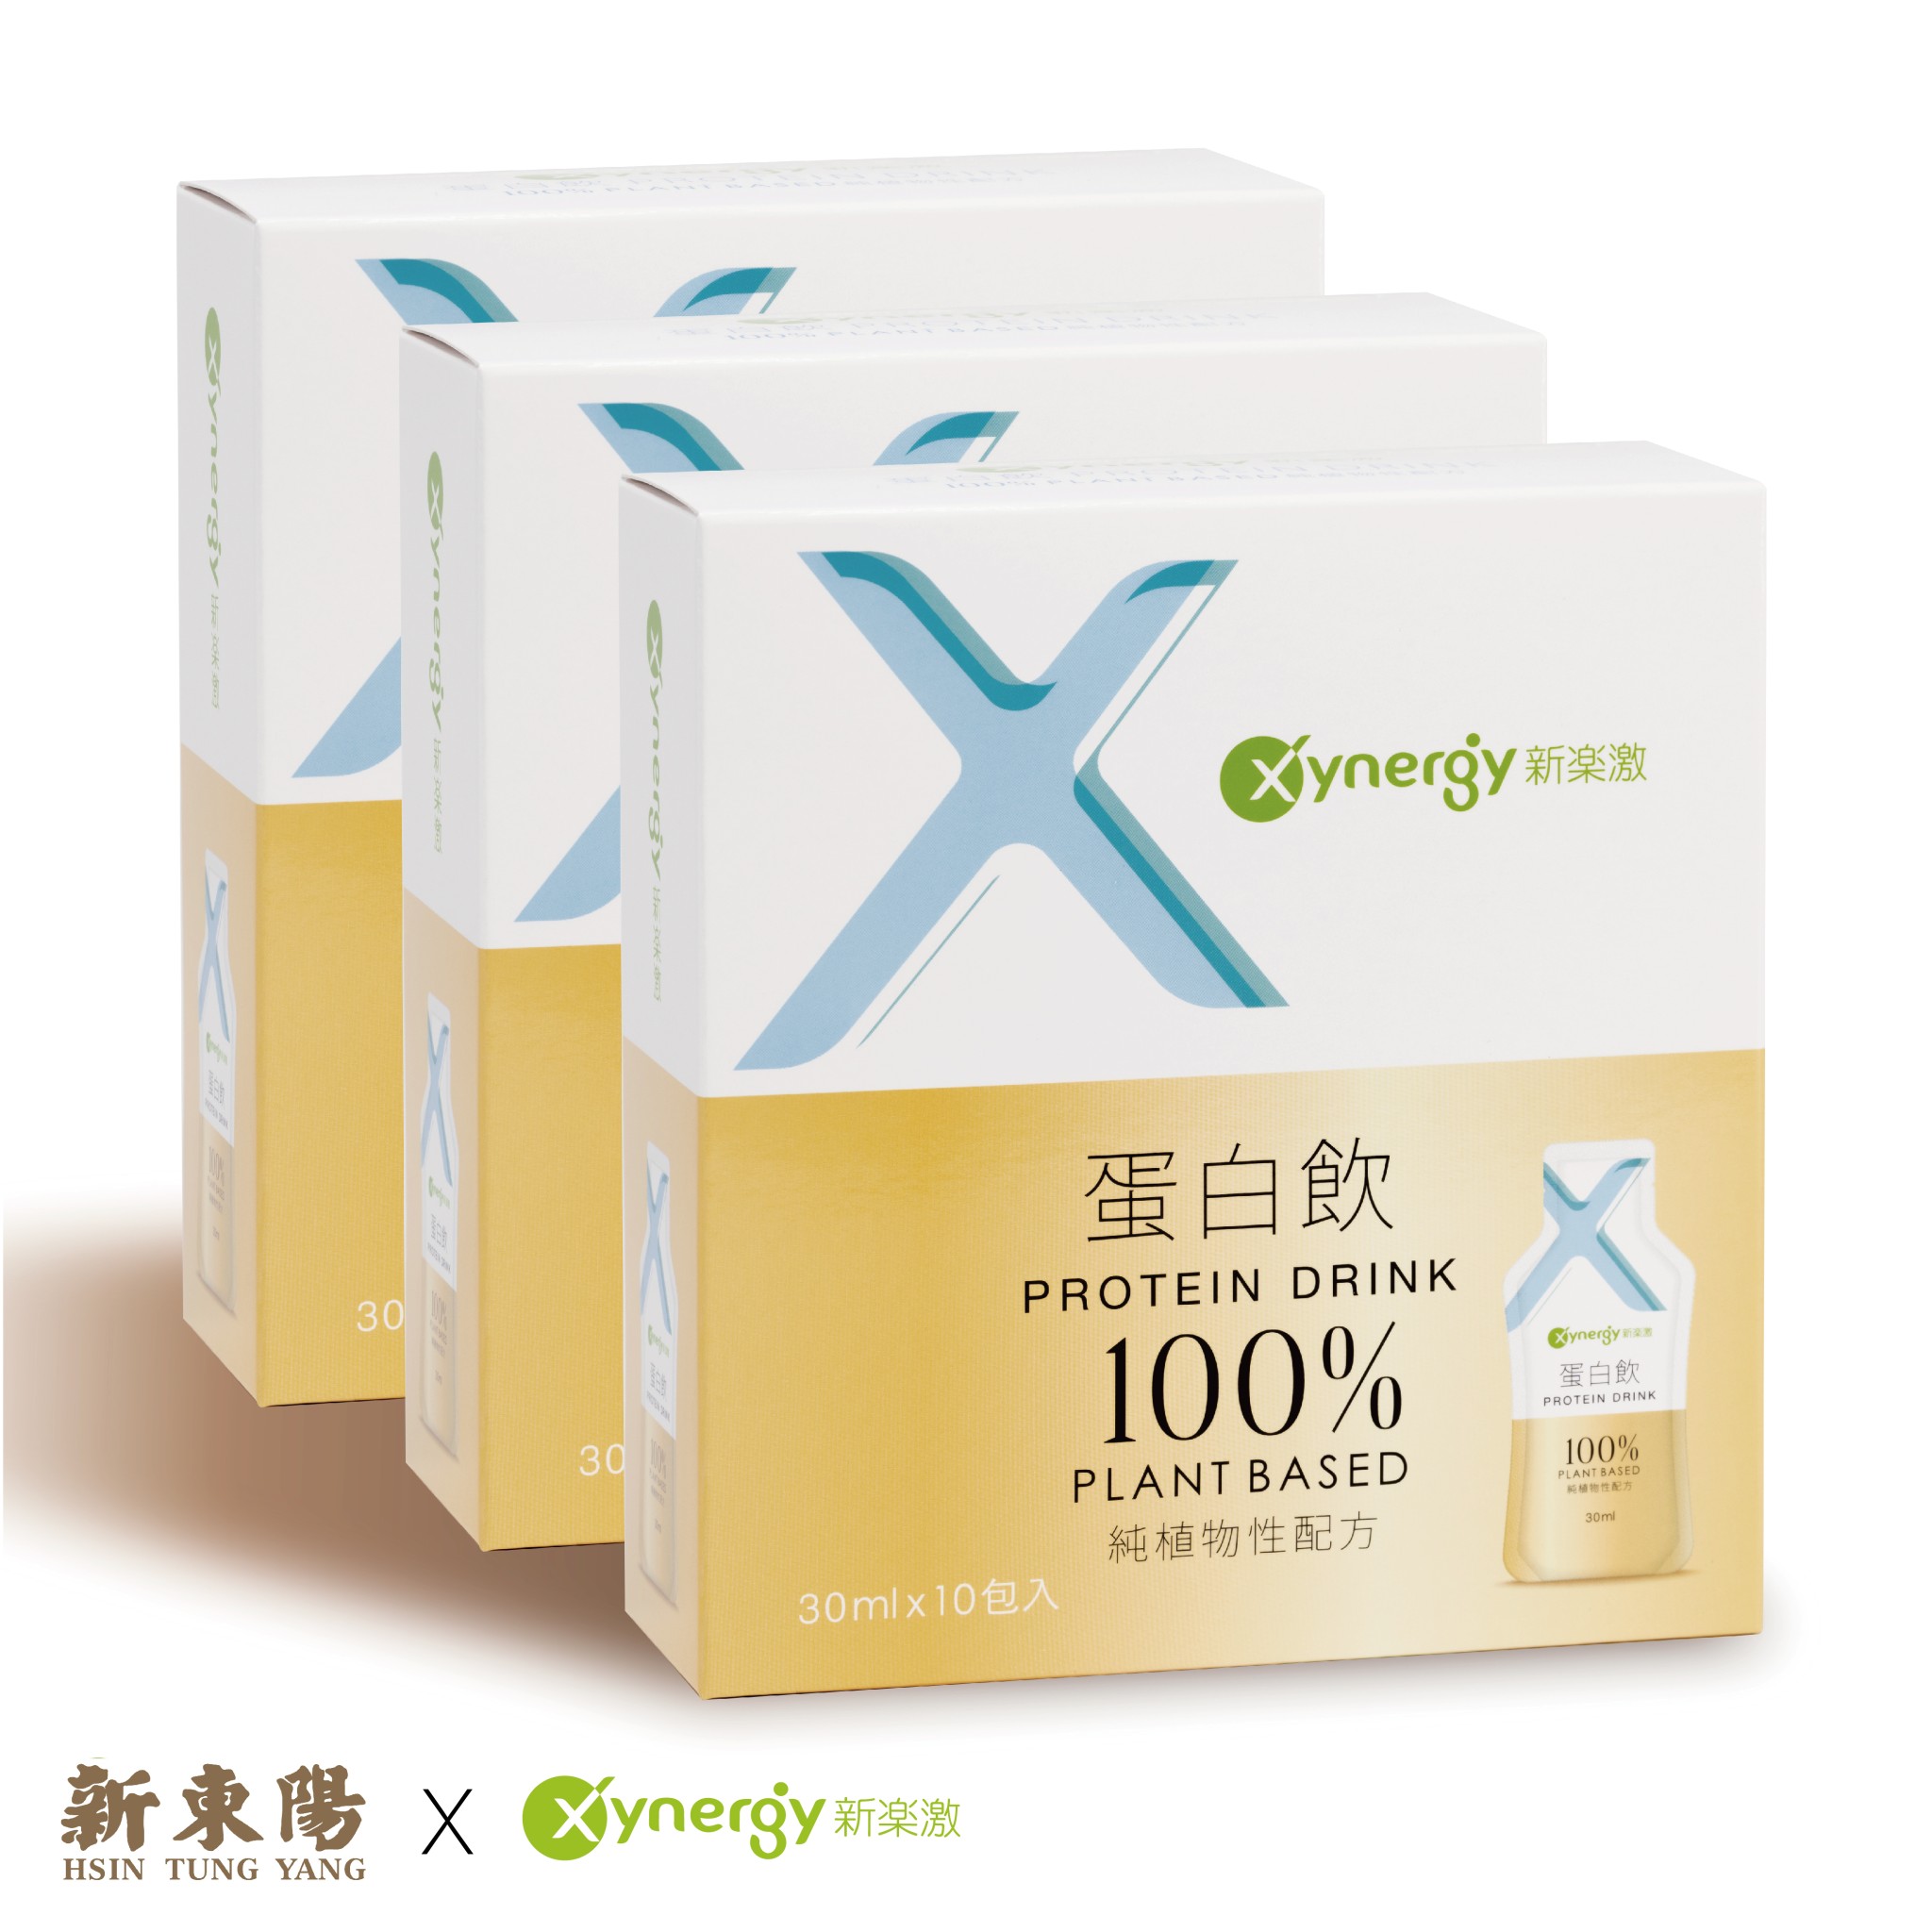 《新東陽x新樂激》Xynergy新樂激植物蛋白飲30ml/包*30包，共3盒